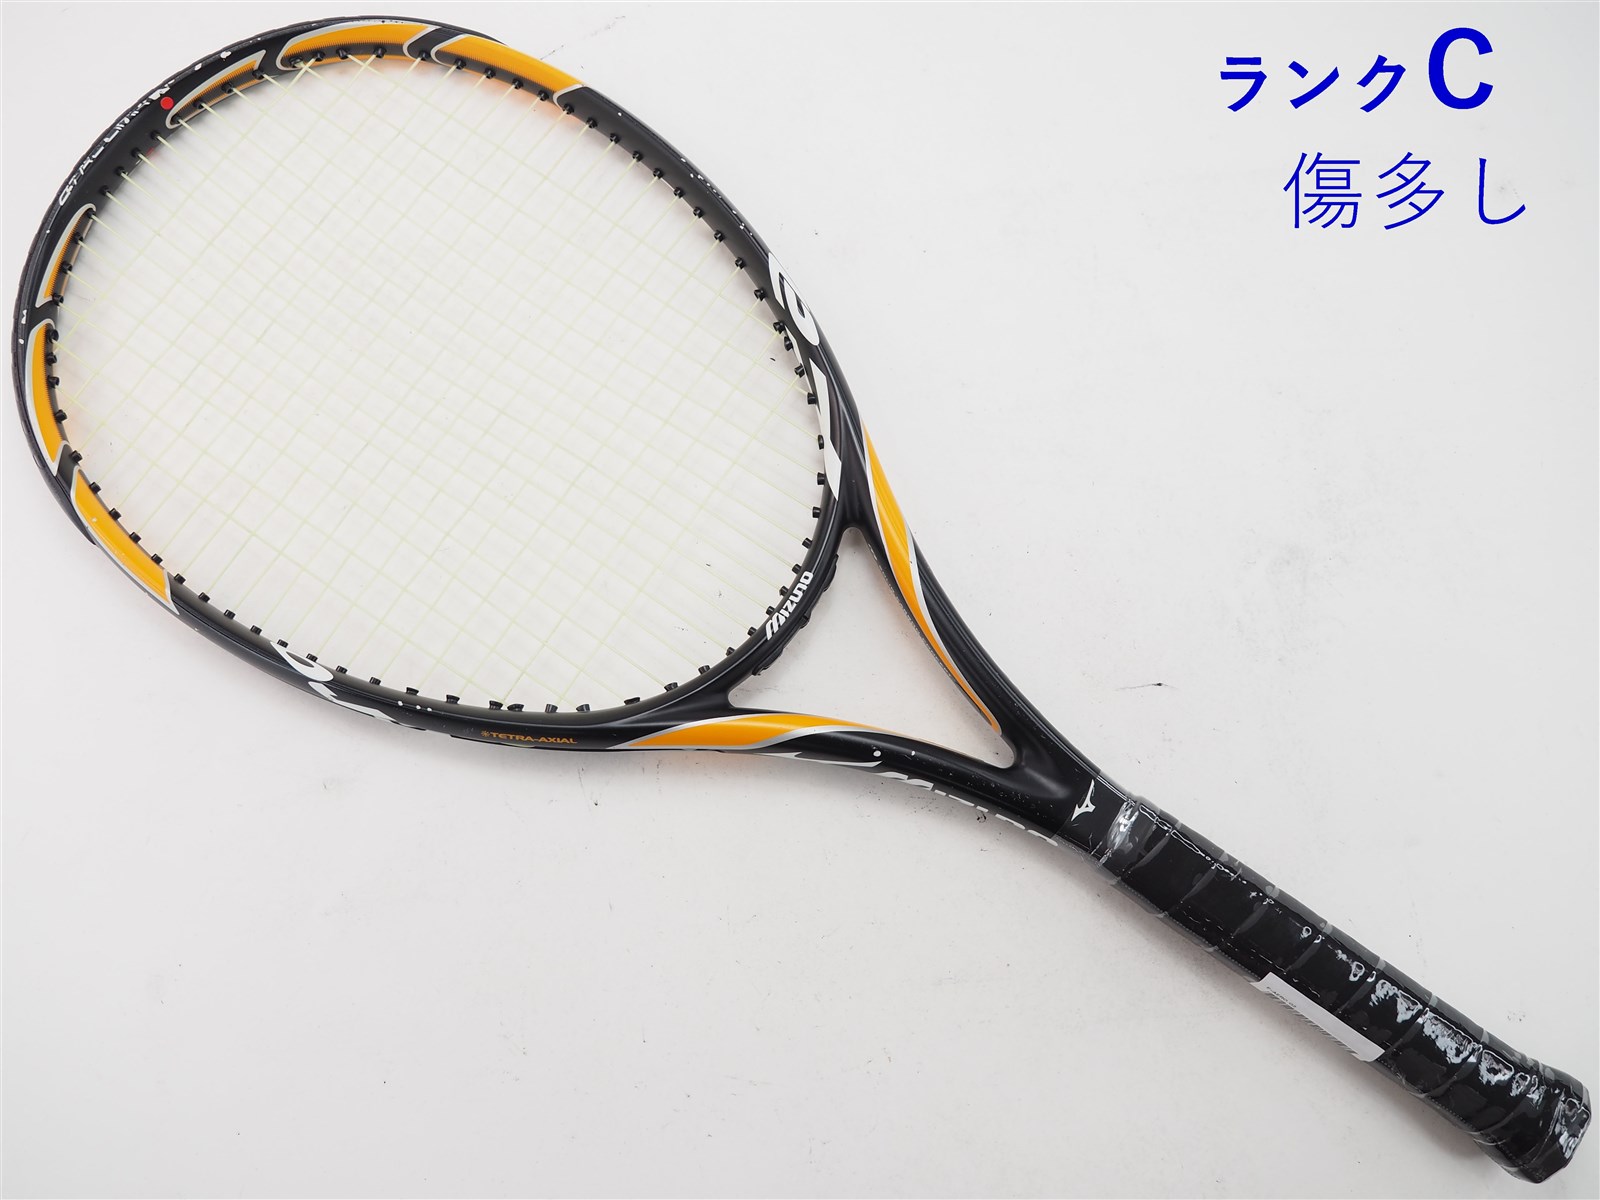 新品 テニスラケット 硬式 f-aero COMP www.krzysztofbialy.com